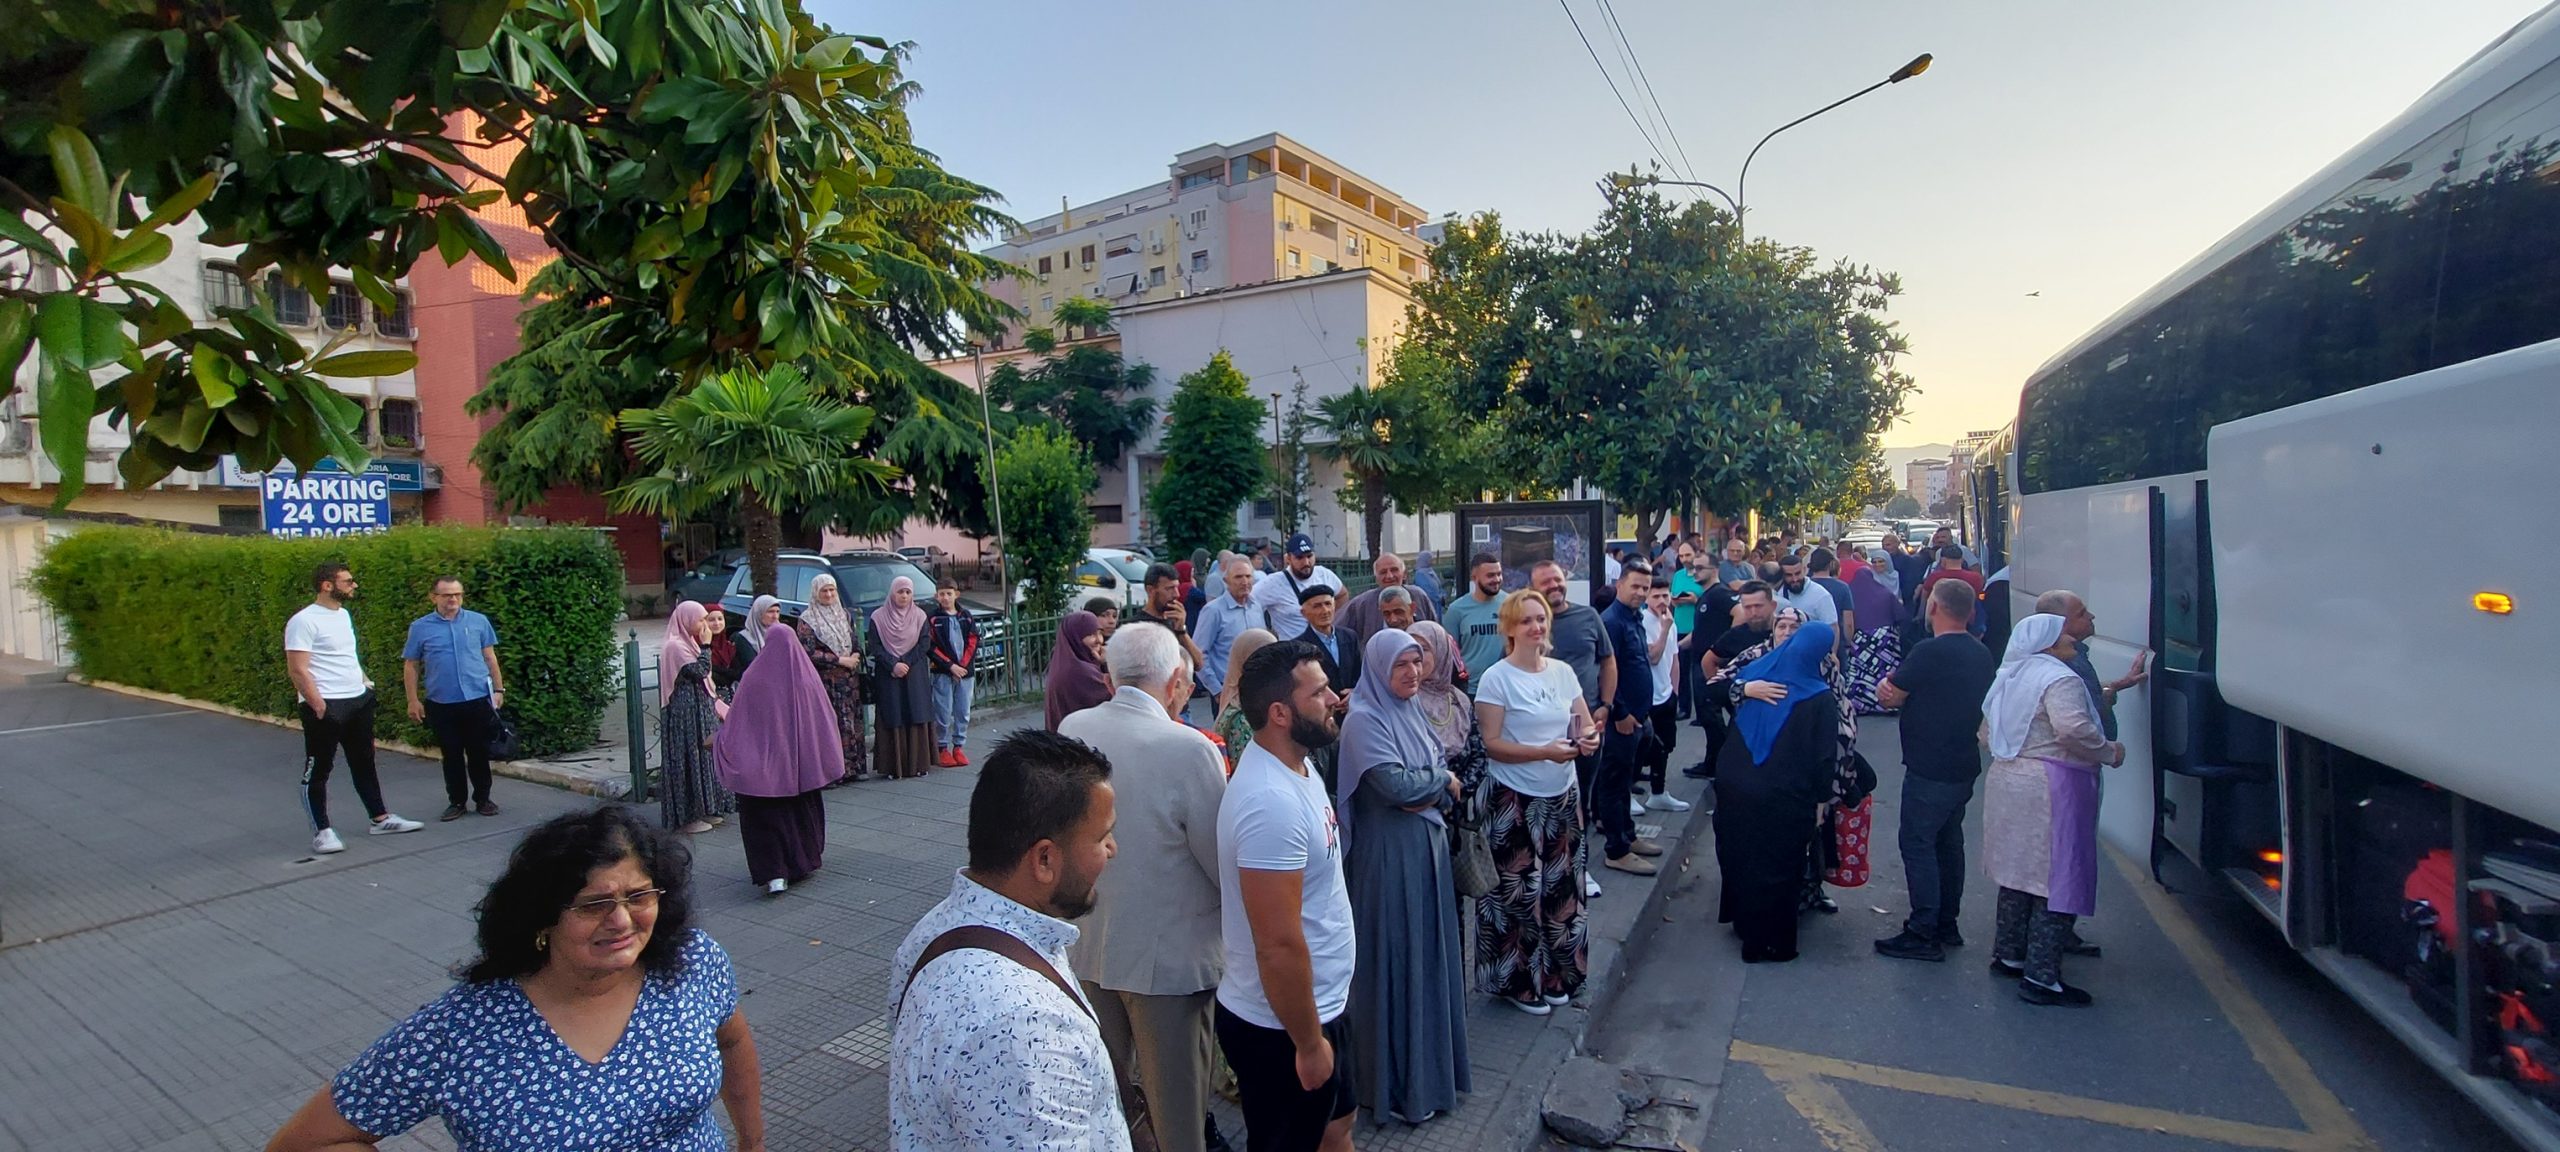 110 haxhilerë nga Shkodra u nisën për të kryer Haxhin e sivjetshëm…